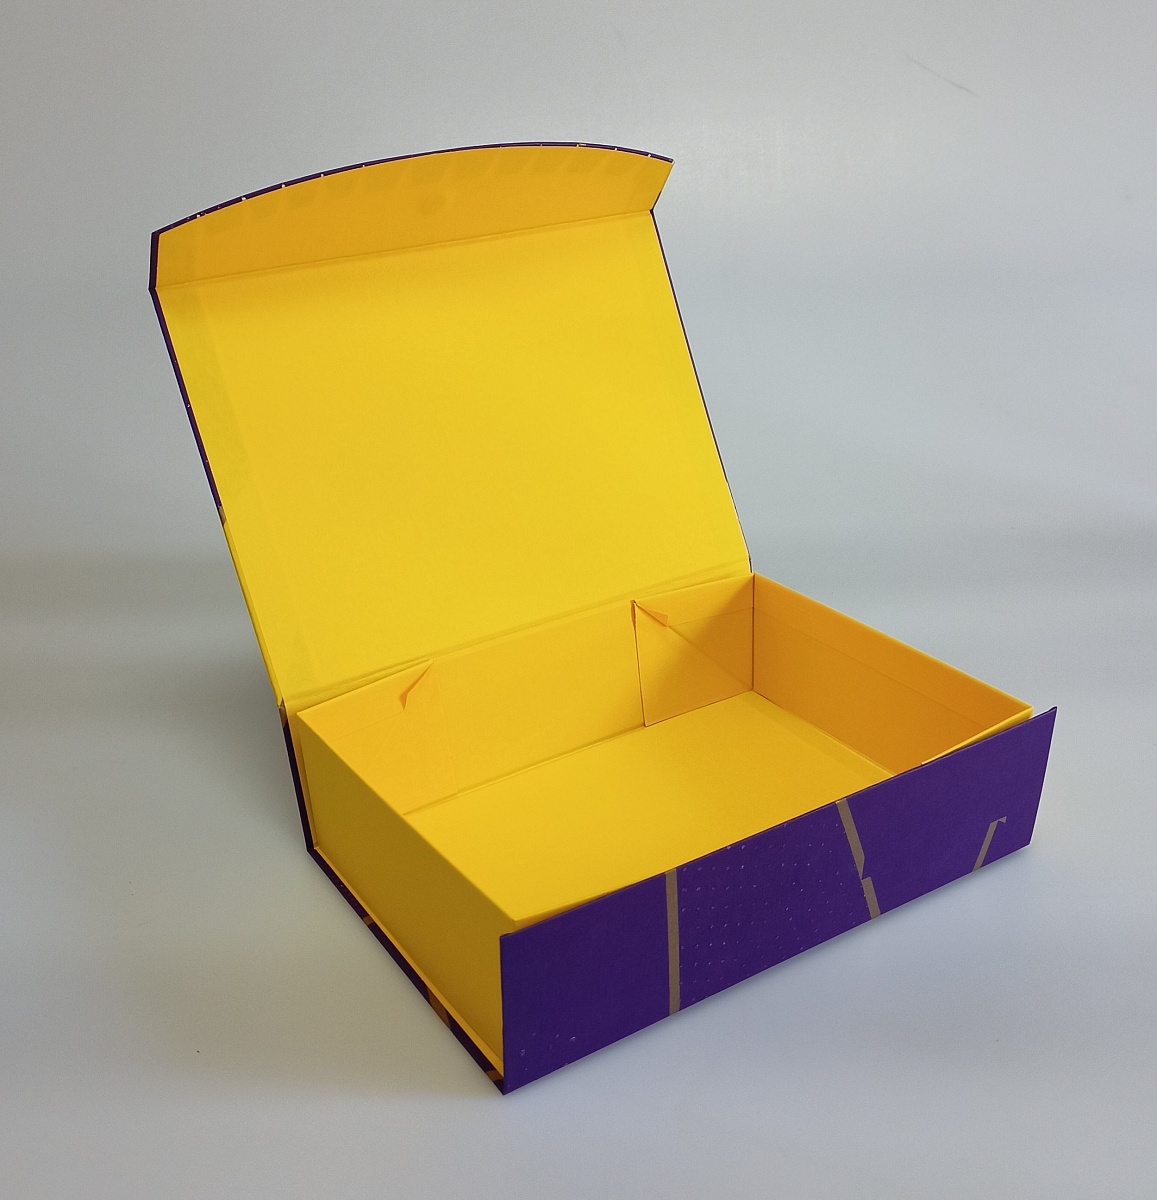 Подарочная коробка-трансформер,  27 x 19.5 x 7.5 см.  "Эйфория", фиолетовый